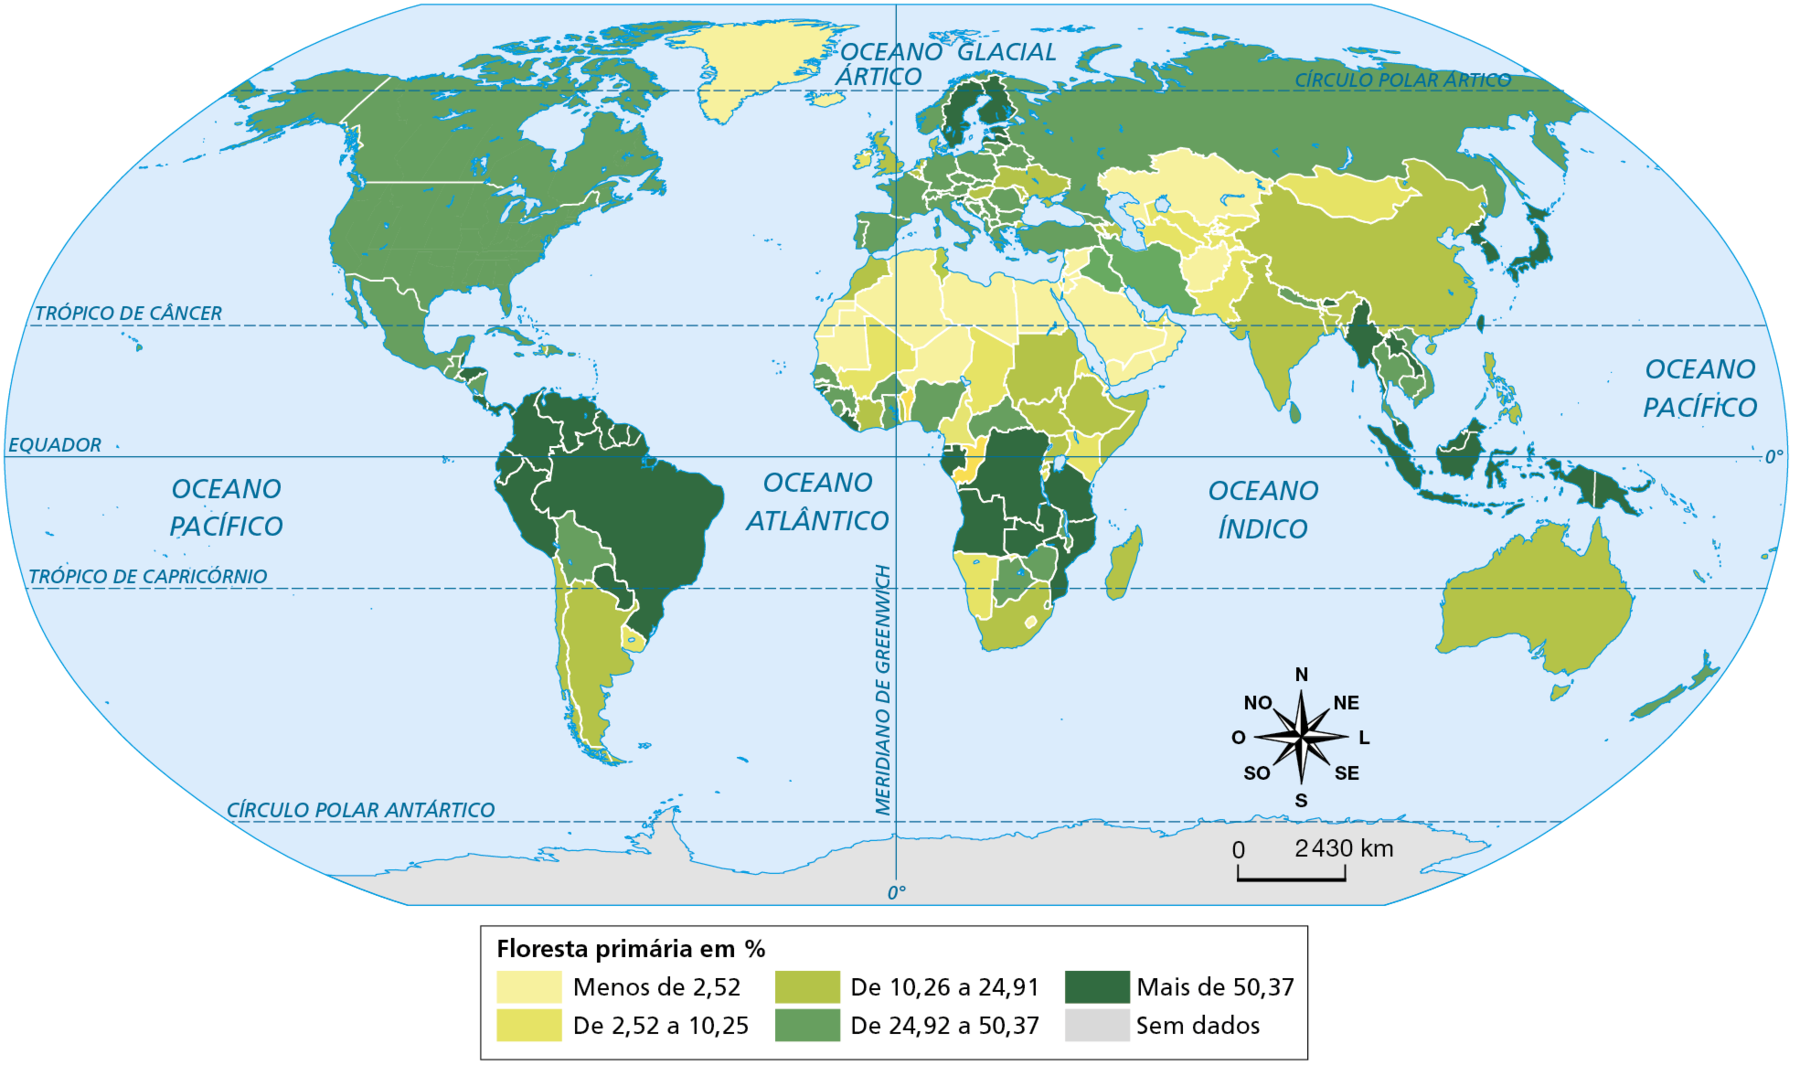 Mapa. Planisfério: percentuais de florestas primárias - 2019. Planisfério mostrando a classificação dos países de acordo com os percentuais de floresta primária existentes em cada território. Os países estão destacados em tonalidades de cor que variam do mais claro, em amarelo (países com menor presença de floresta primária), para o mais escuro, em verde escuro (países com maior presença de floresta primária). Floresta primária em porcentagem: Menos de 2,52%: Groenlândia, Islândia, Cazaquistão, Mauritânia, Egito, Líbia, Arábia Saudita, Iêmen, entre outros países do Norte da África, do Oriente Médio e da Ásia. De 2,52% a 10,25%: Uruguai, Quênia, Uzbequistão, Mongólia, entre outros países da África e Ásia. De 10,25% a 24,91%: Argentina, Chile, África do Sul, Madagascar, Somália, Etiópia, Costa do Marfim, Índia, Austrália, China, Ucrânia, Filipinas, entre outros países da África, Europa e Ásia. De 24,91% a 50,37%: Bolívia, Botsuana, Zâmbia, Camboja, Vietnã, Rússia, Irã, Turquia, Portugal, Espanha, Itália, Grécia, França, Alemanha, Polônia, Estados Unidos, Canadá, México, Cuba, Honduras, entre outros países da Europa, Ásia e África. Mais de 50,37%: Brasil, Venezuela, Colômbia, Peru, Equador, Angola, República Democrática do Congo, Suécia, Moçambique, Indonésia, Japão, entre outros países da África, América do Sul, Ásia e Europa. Na parte inferior direita, rosa dos ventos e  escala de 0 a 2.430 quilômetros.